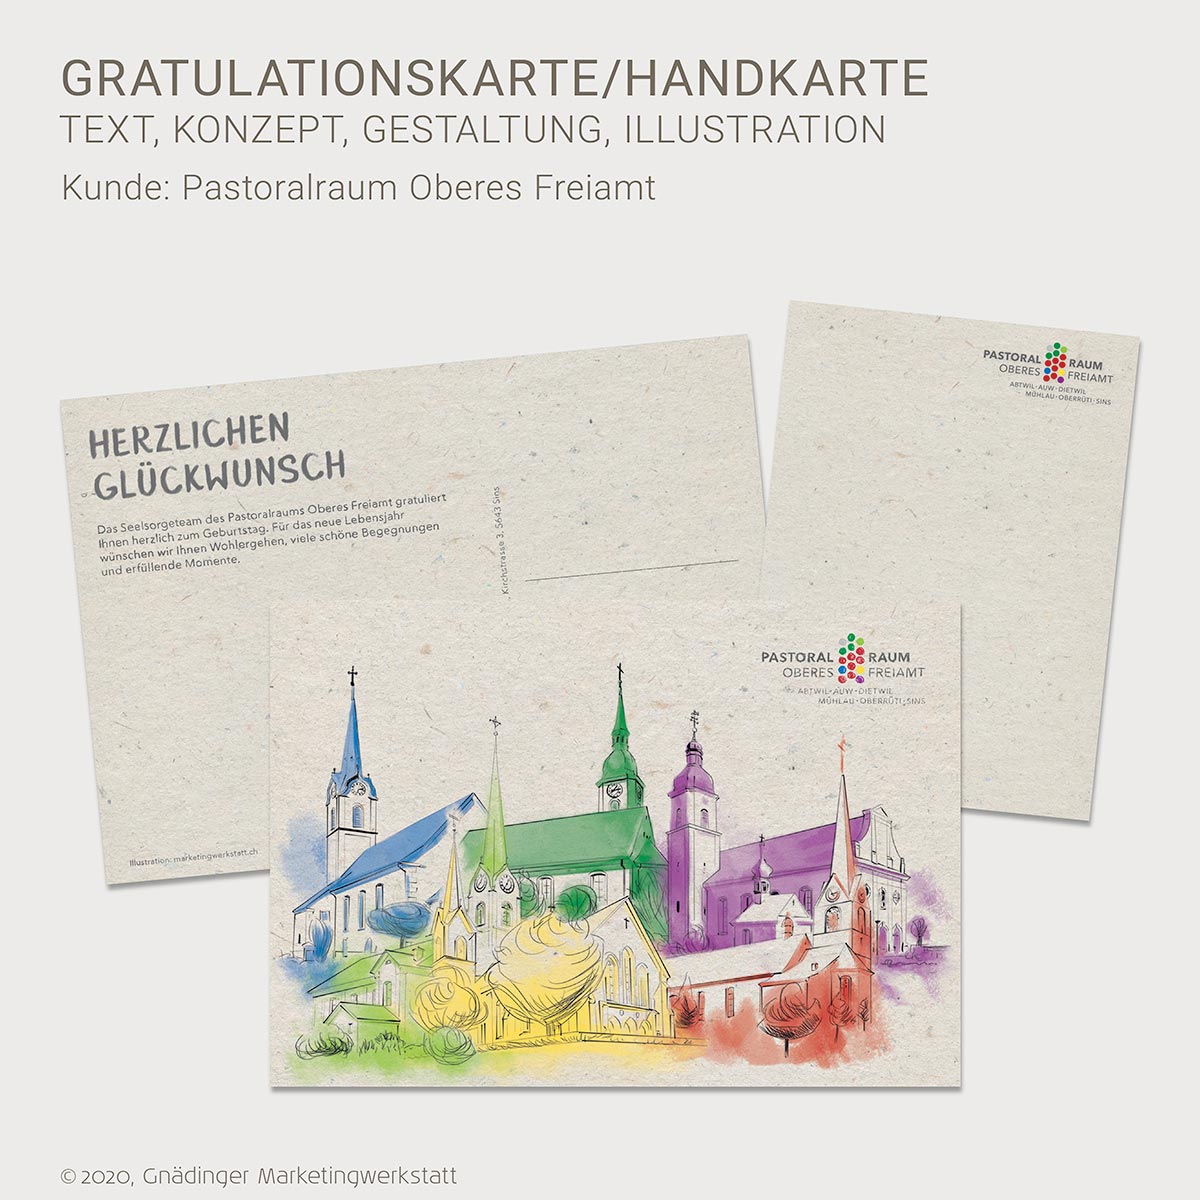 WEB1_GMW_Projekt_Pastoralraum-OF-Geburtstag-Handkarte_12-2020